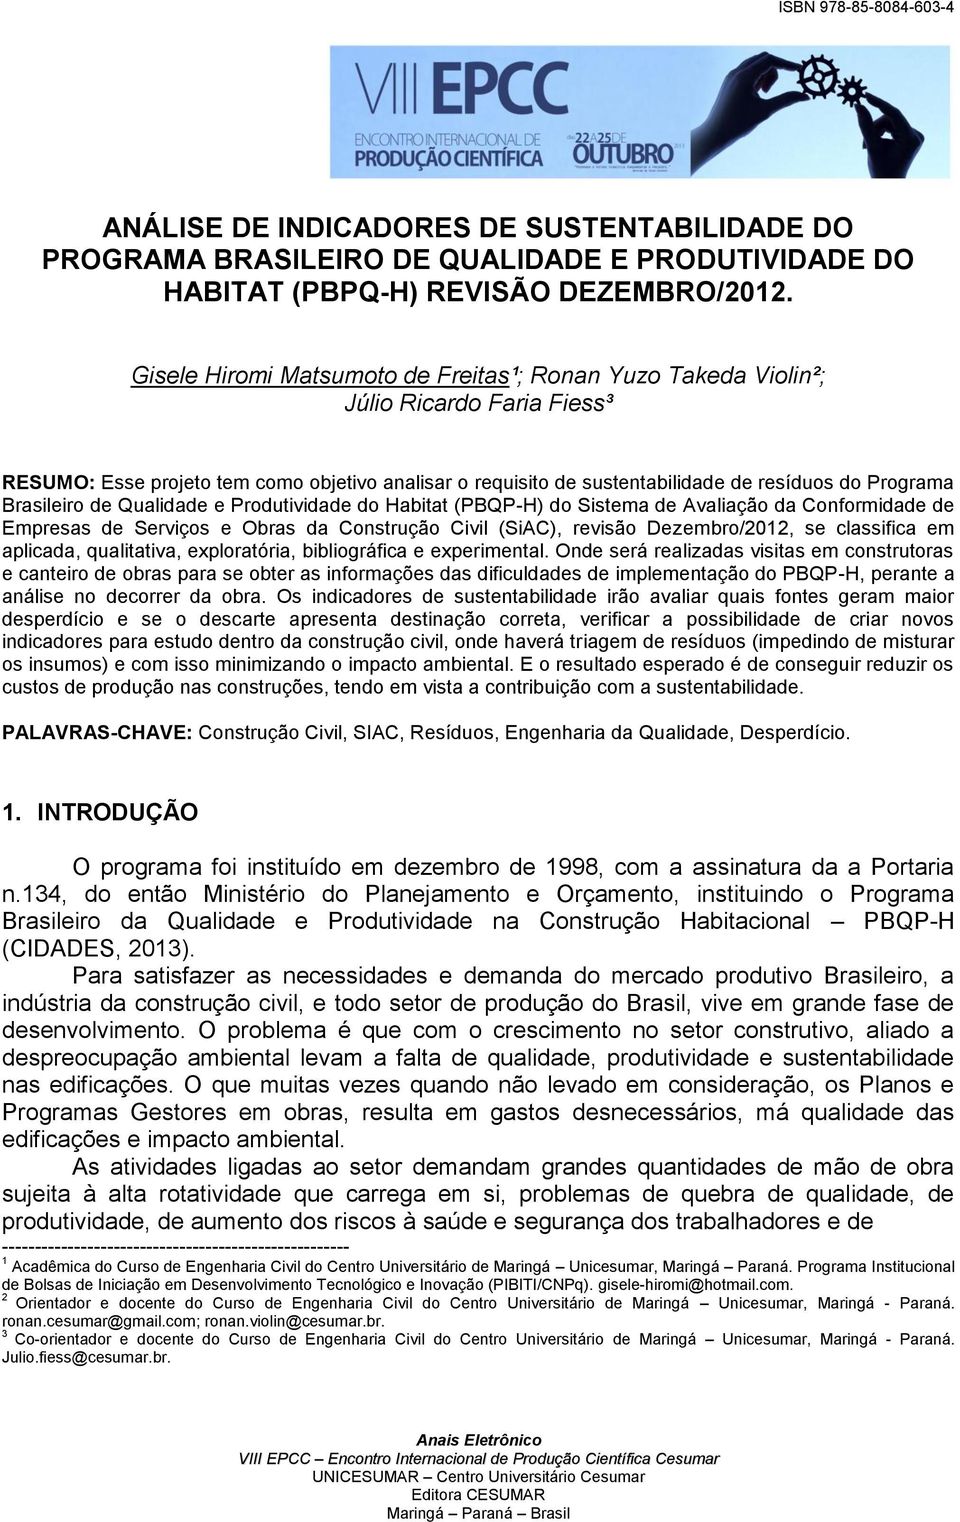 Brasileiro de Qualidade e Produtividade do Habitat (PBQP-H) do Sistema de Avaliação da Conformidade de Empresas de Serviços e Obras da Construção Civil (SiAC), revisão Dezembro/2012, se classifica em